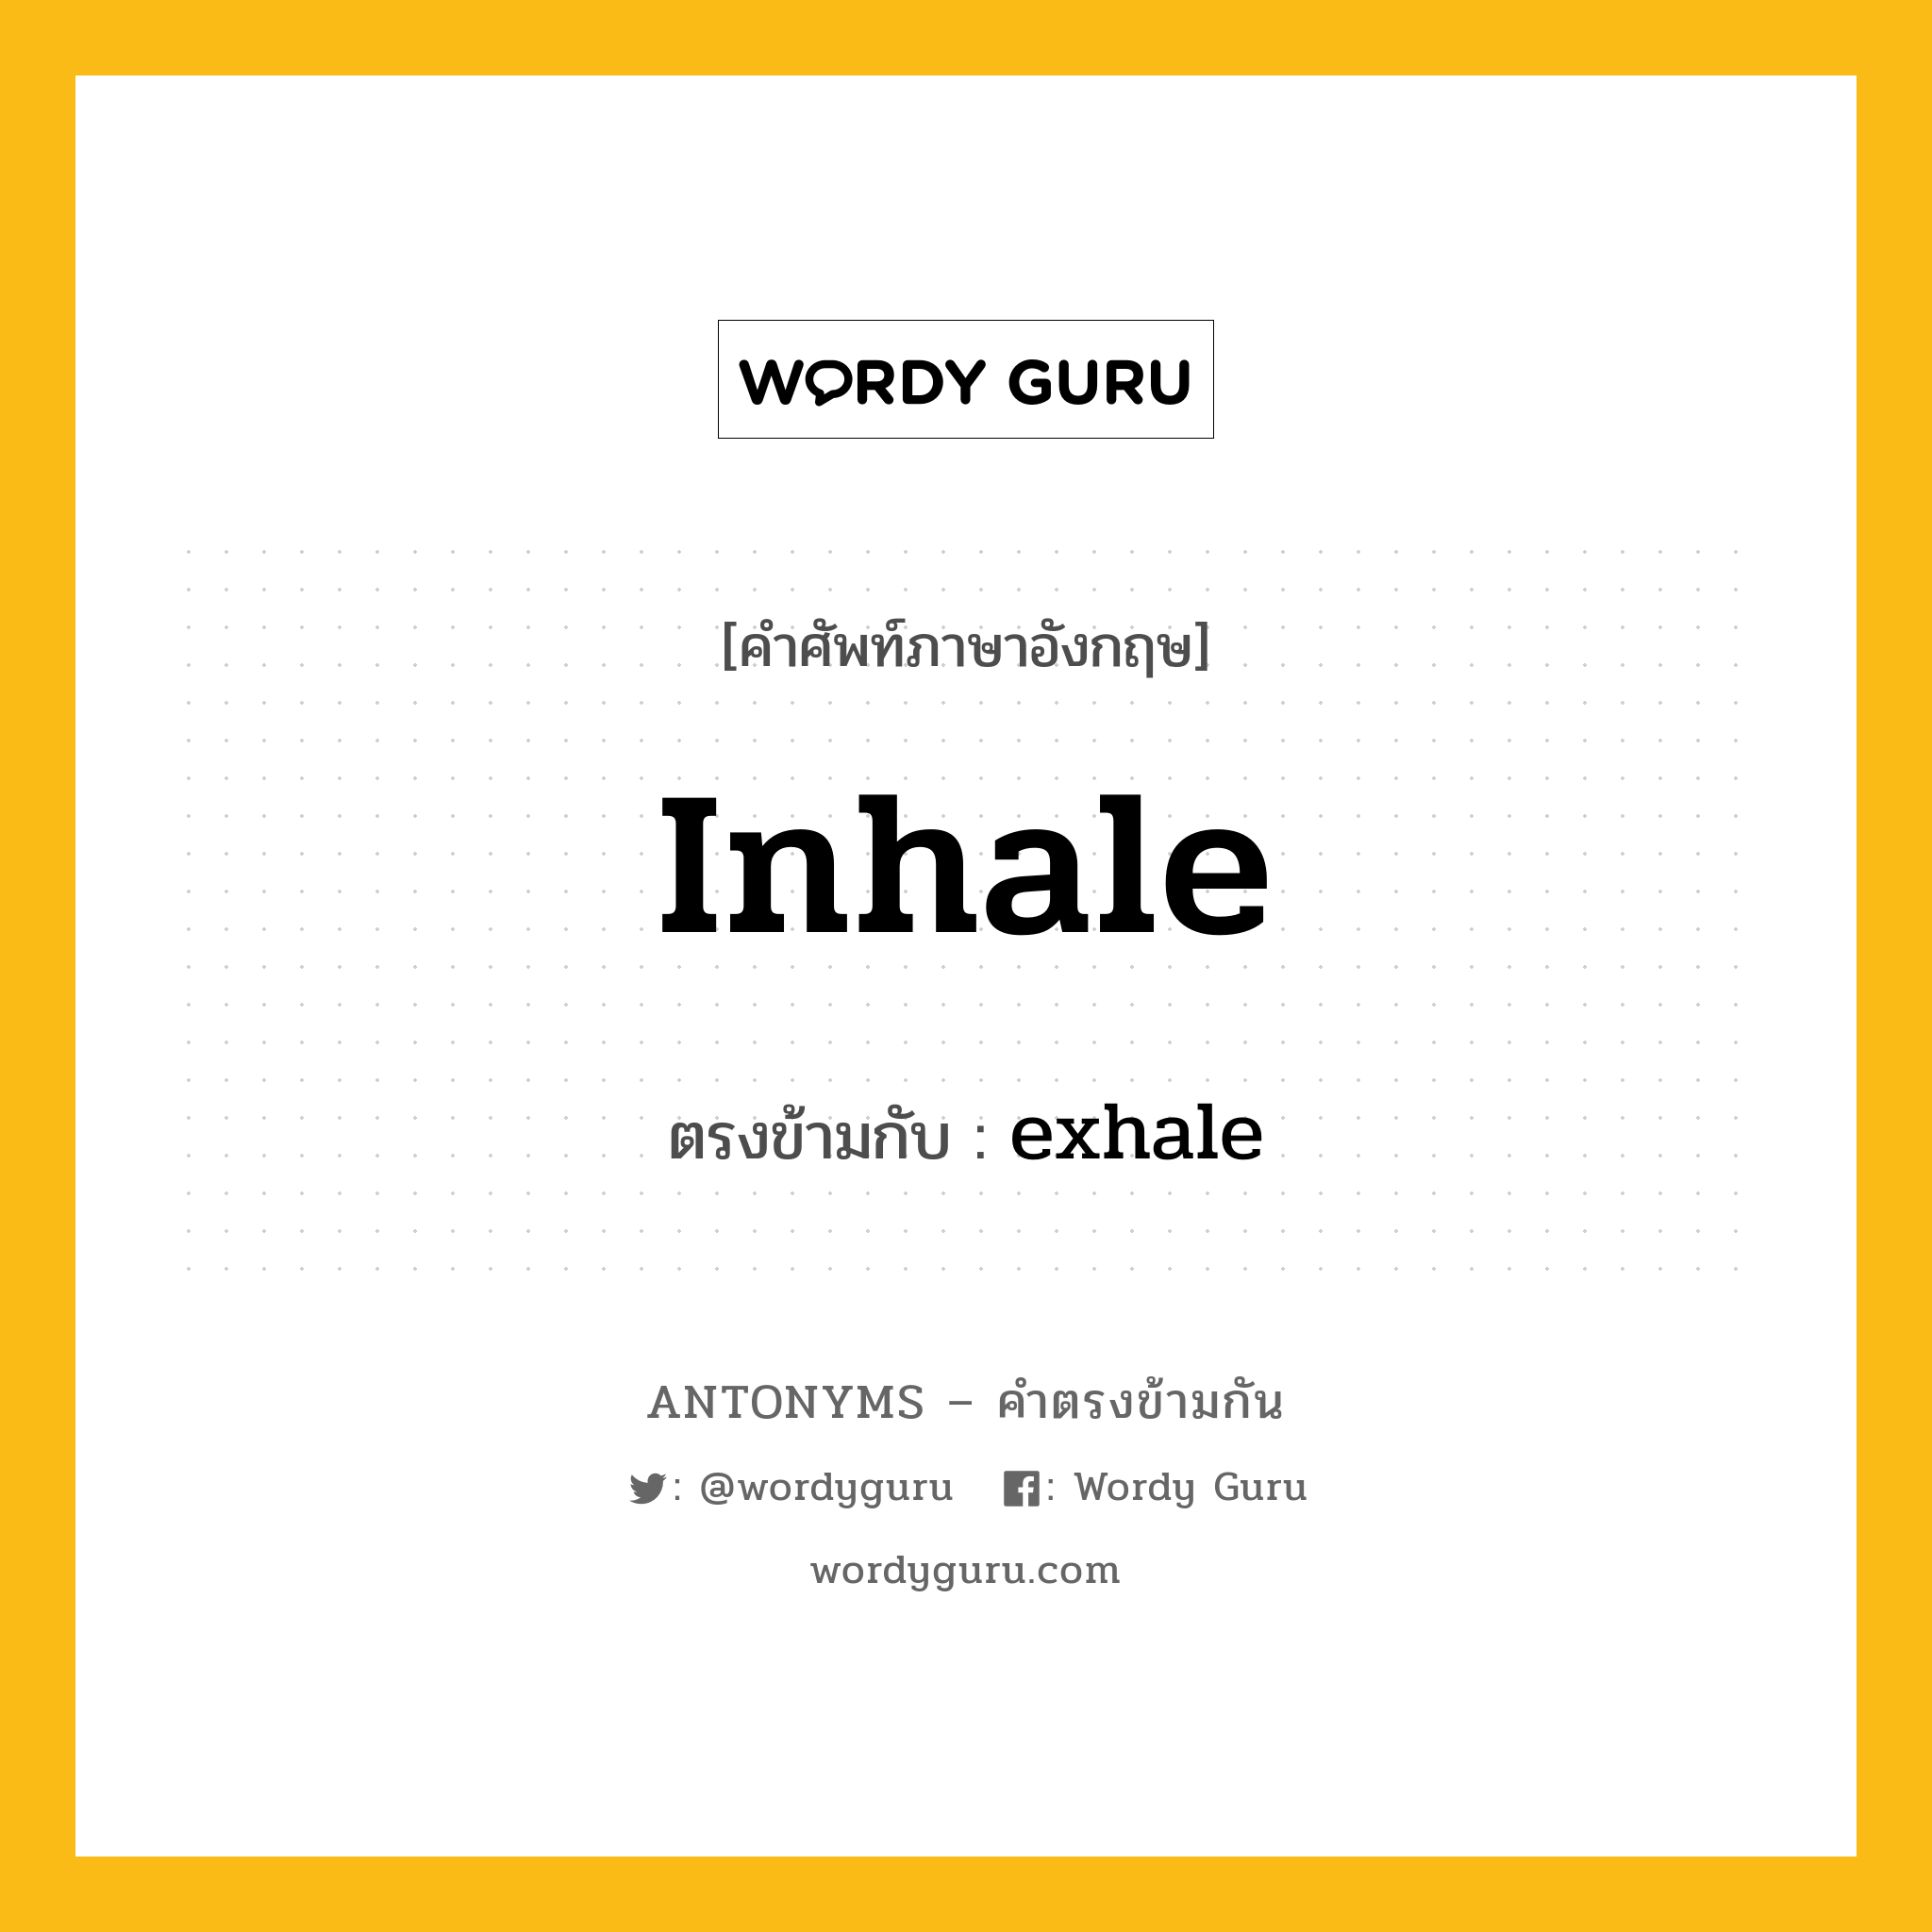 inhale เป็นคำตรงข้ามกับคำไหนบ้าง?, คำศัพท์ภาษาอังกฤษ inhale ตรงข้ามกับ exhale หมวด exhale